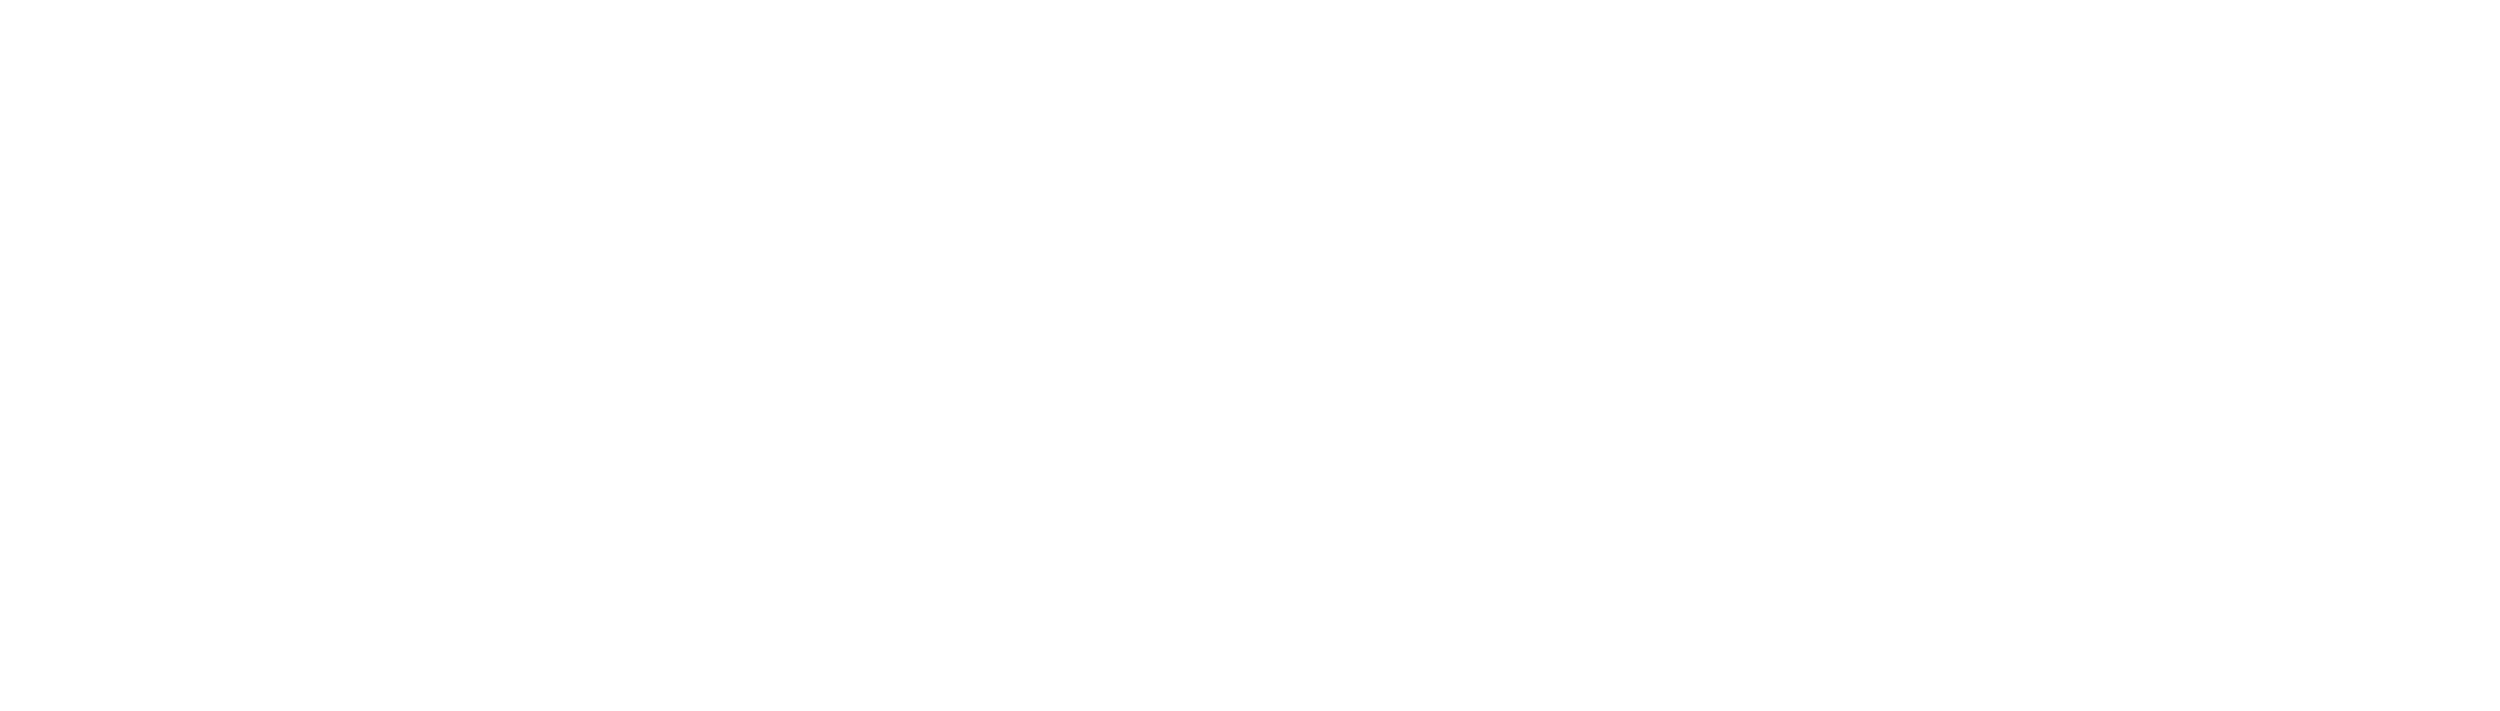 Keren Hayesod Danmark støtter humanitære projekter i Israel